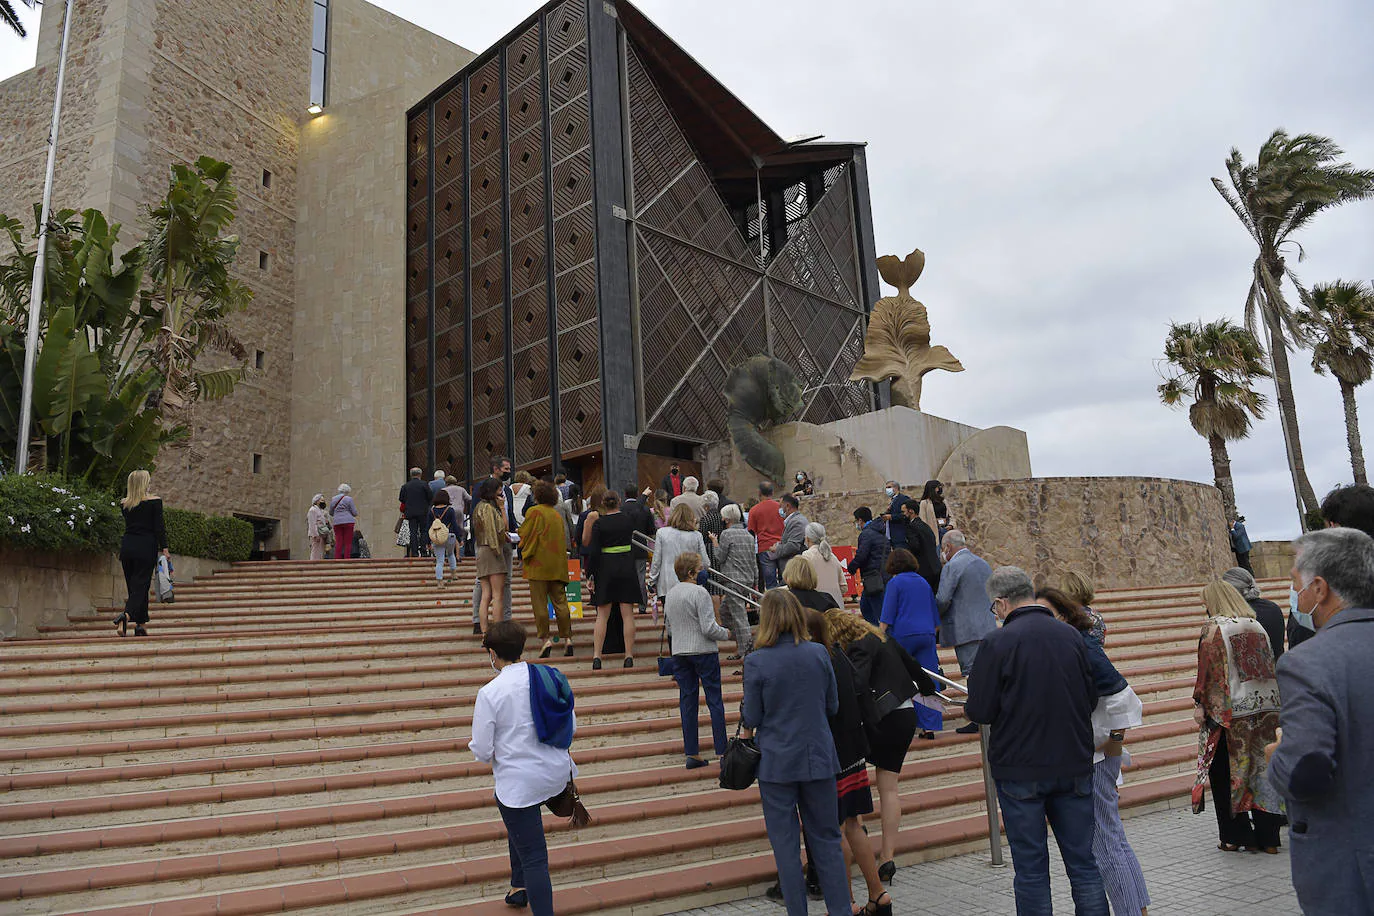 Gustavo Dudamel inaugura el Festival de Música de Canarias en el Auditorio Alfredo Kraus